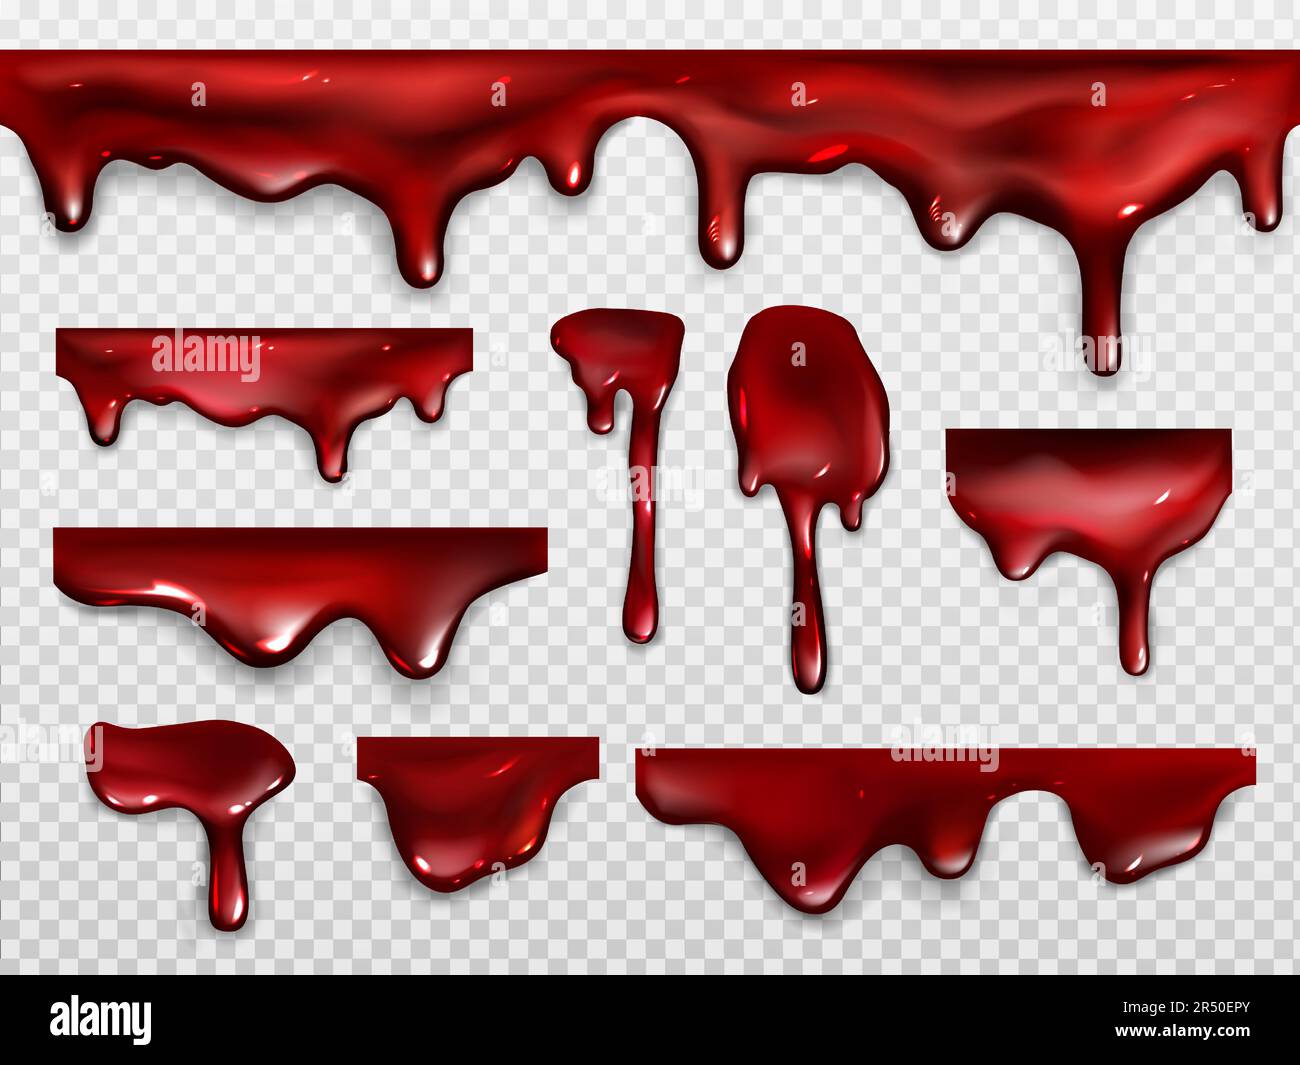 Goutte de sang, de peinture rouge ou de ketchup. Décoration effrayante pour  Halloween ou motif horreur. Vecteur jeu réaliste de gouttes brillantes et  écoulement de minerai liquide, le sirop dribble isolé sur